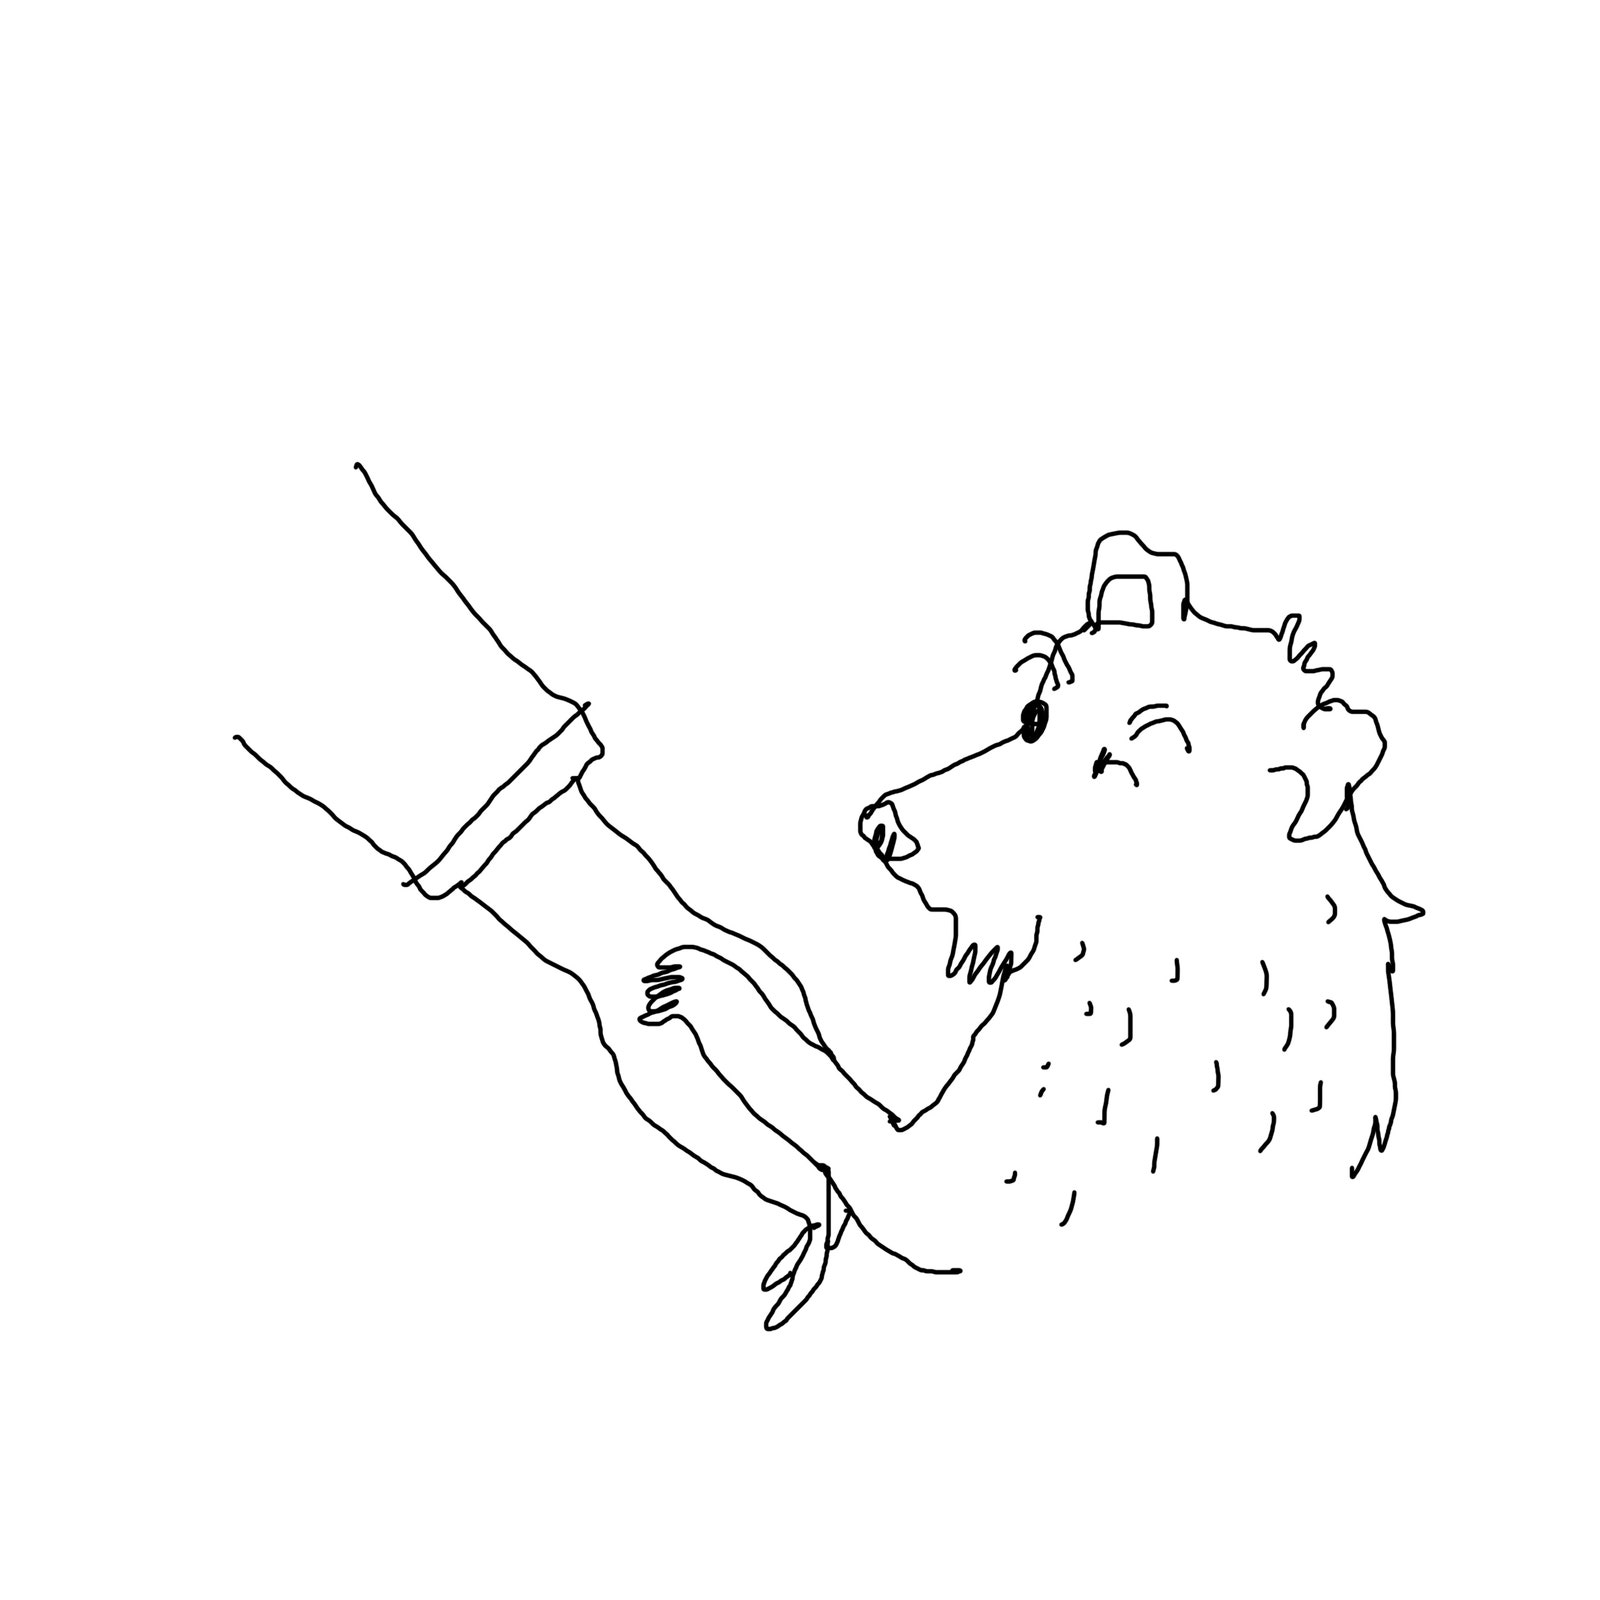 Hund berührt Hand mit seiner Pfote.